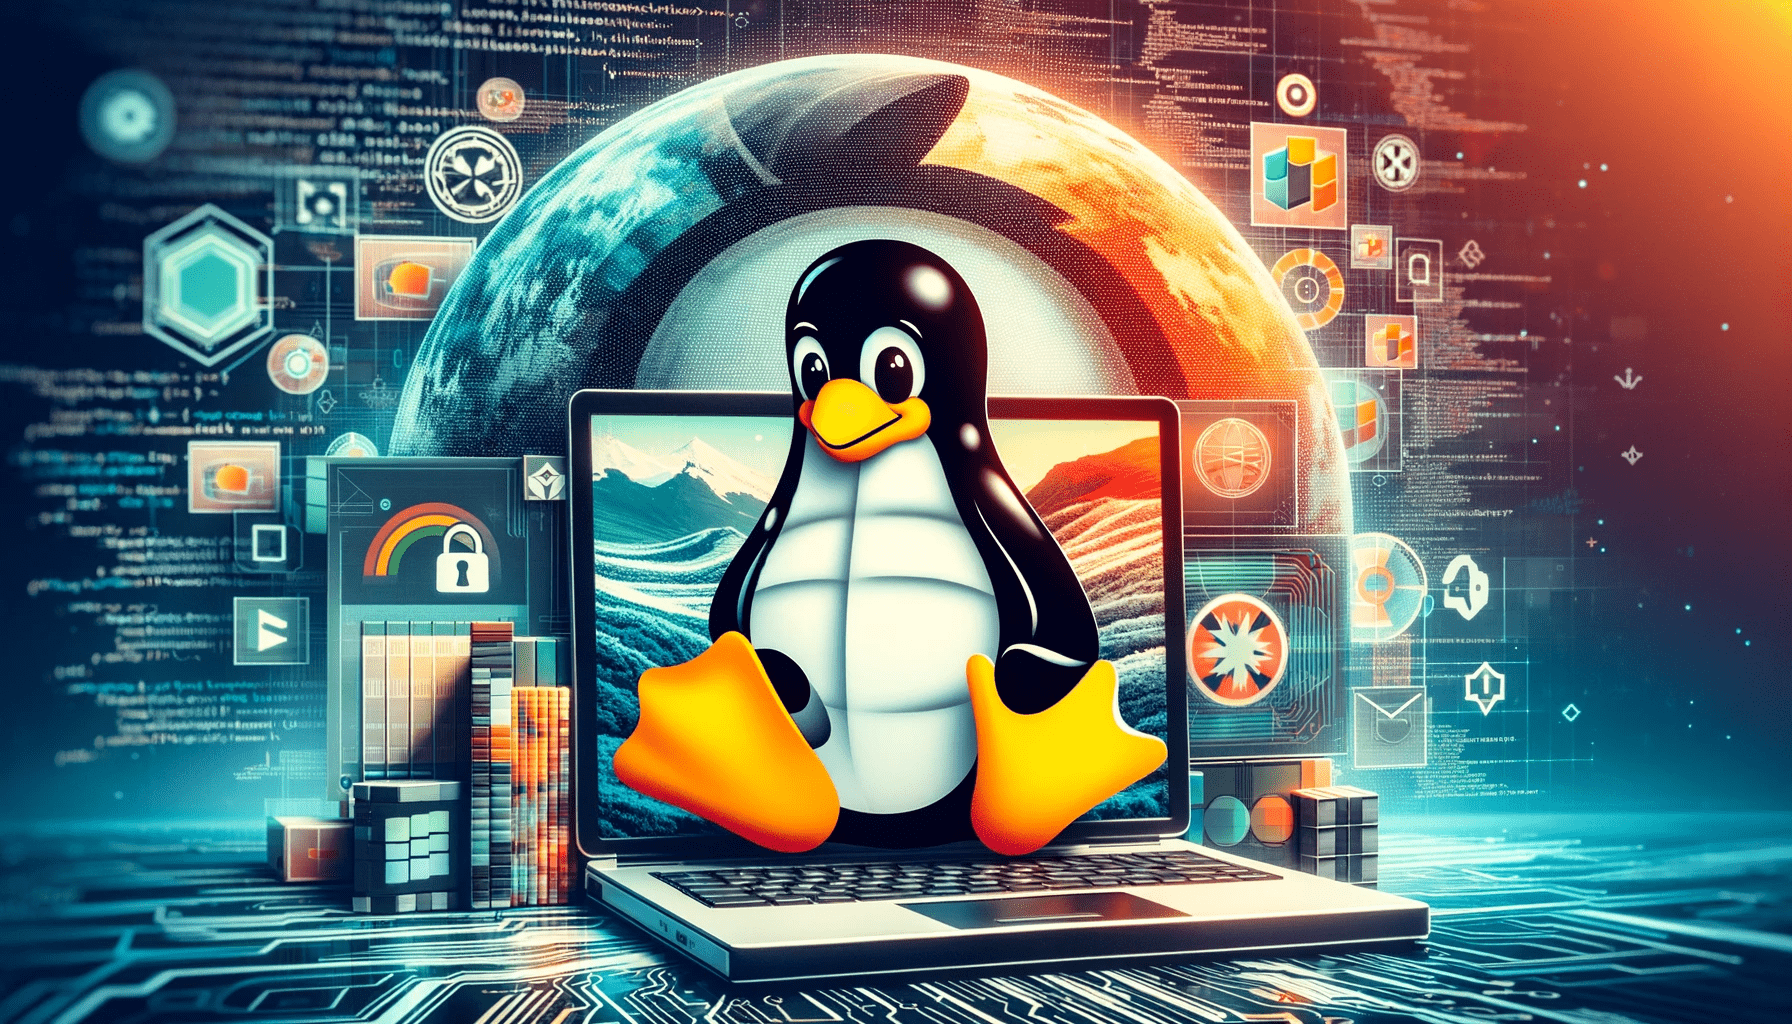 Linux operativsystem collage med Tux-maskoten foran en bærbar PC som viser Linux-grensesnittet, omgitt av kode, digitale landskap, og åpen kildekode symboler, som fremhever sikkerhet, fleksibilitet og fellesskapsdrevet utvikling.